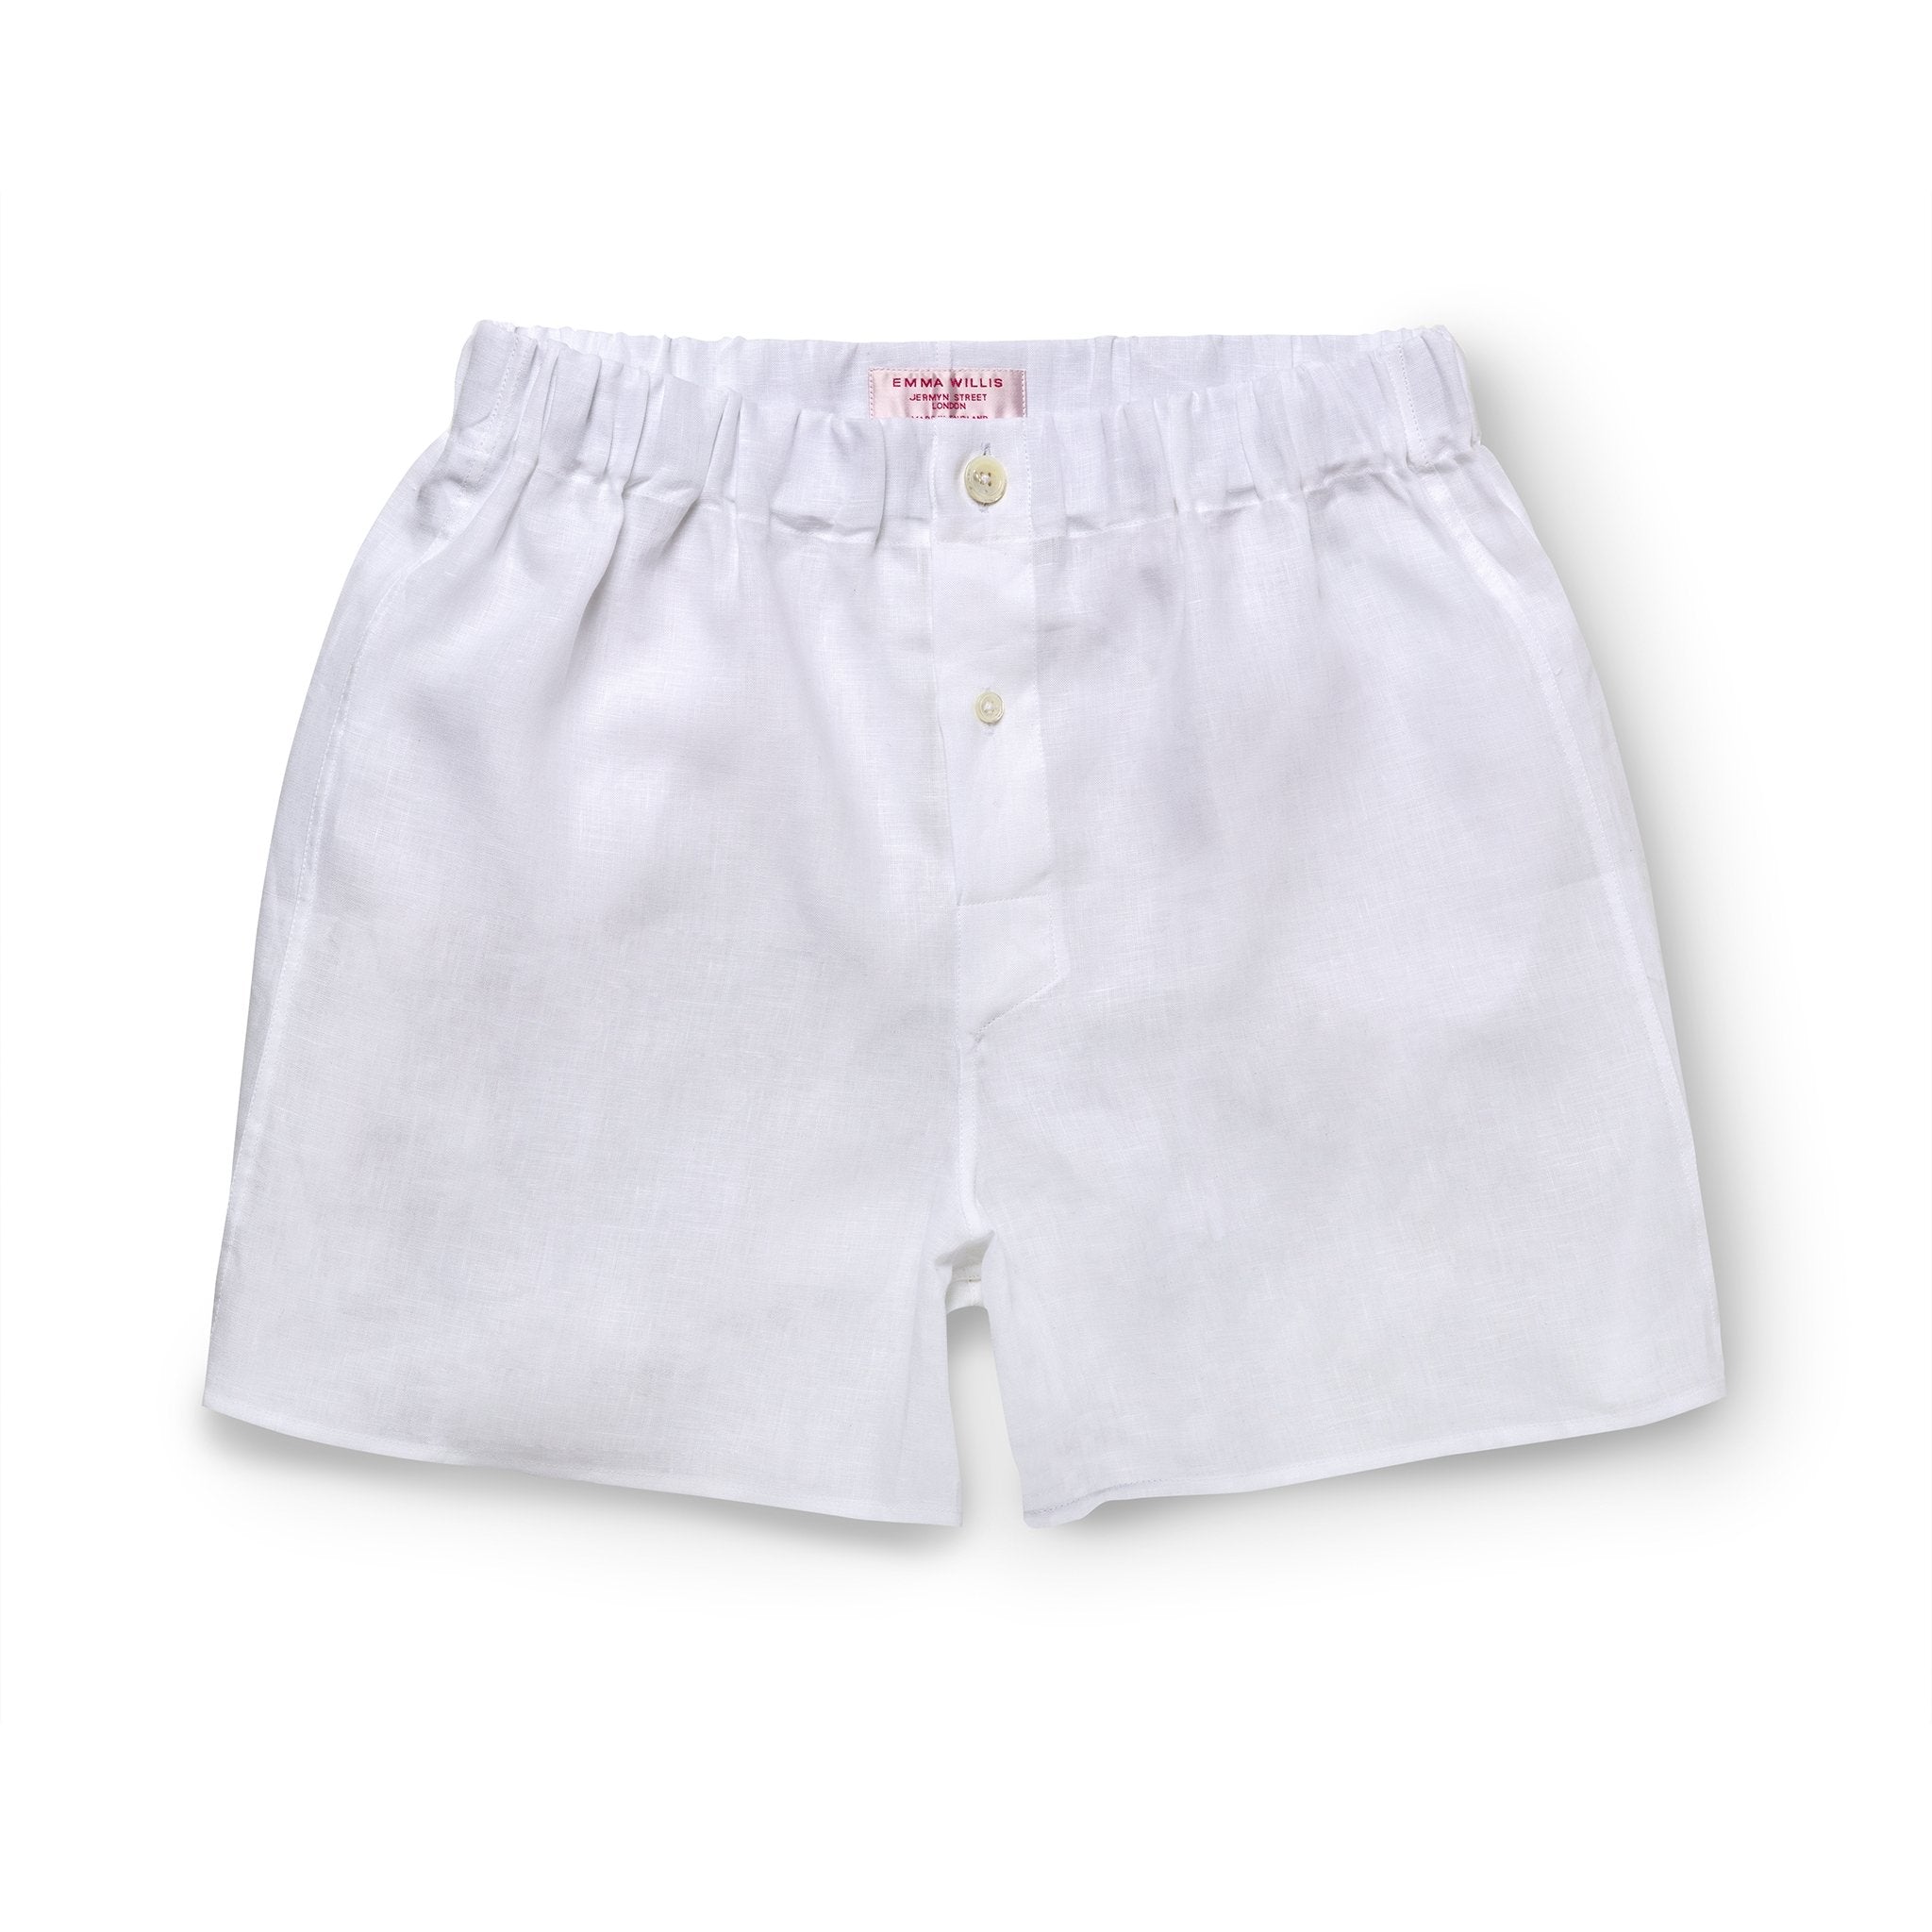 White Linen Slim Fit Boxer Shorts - New - Emma Willis